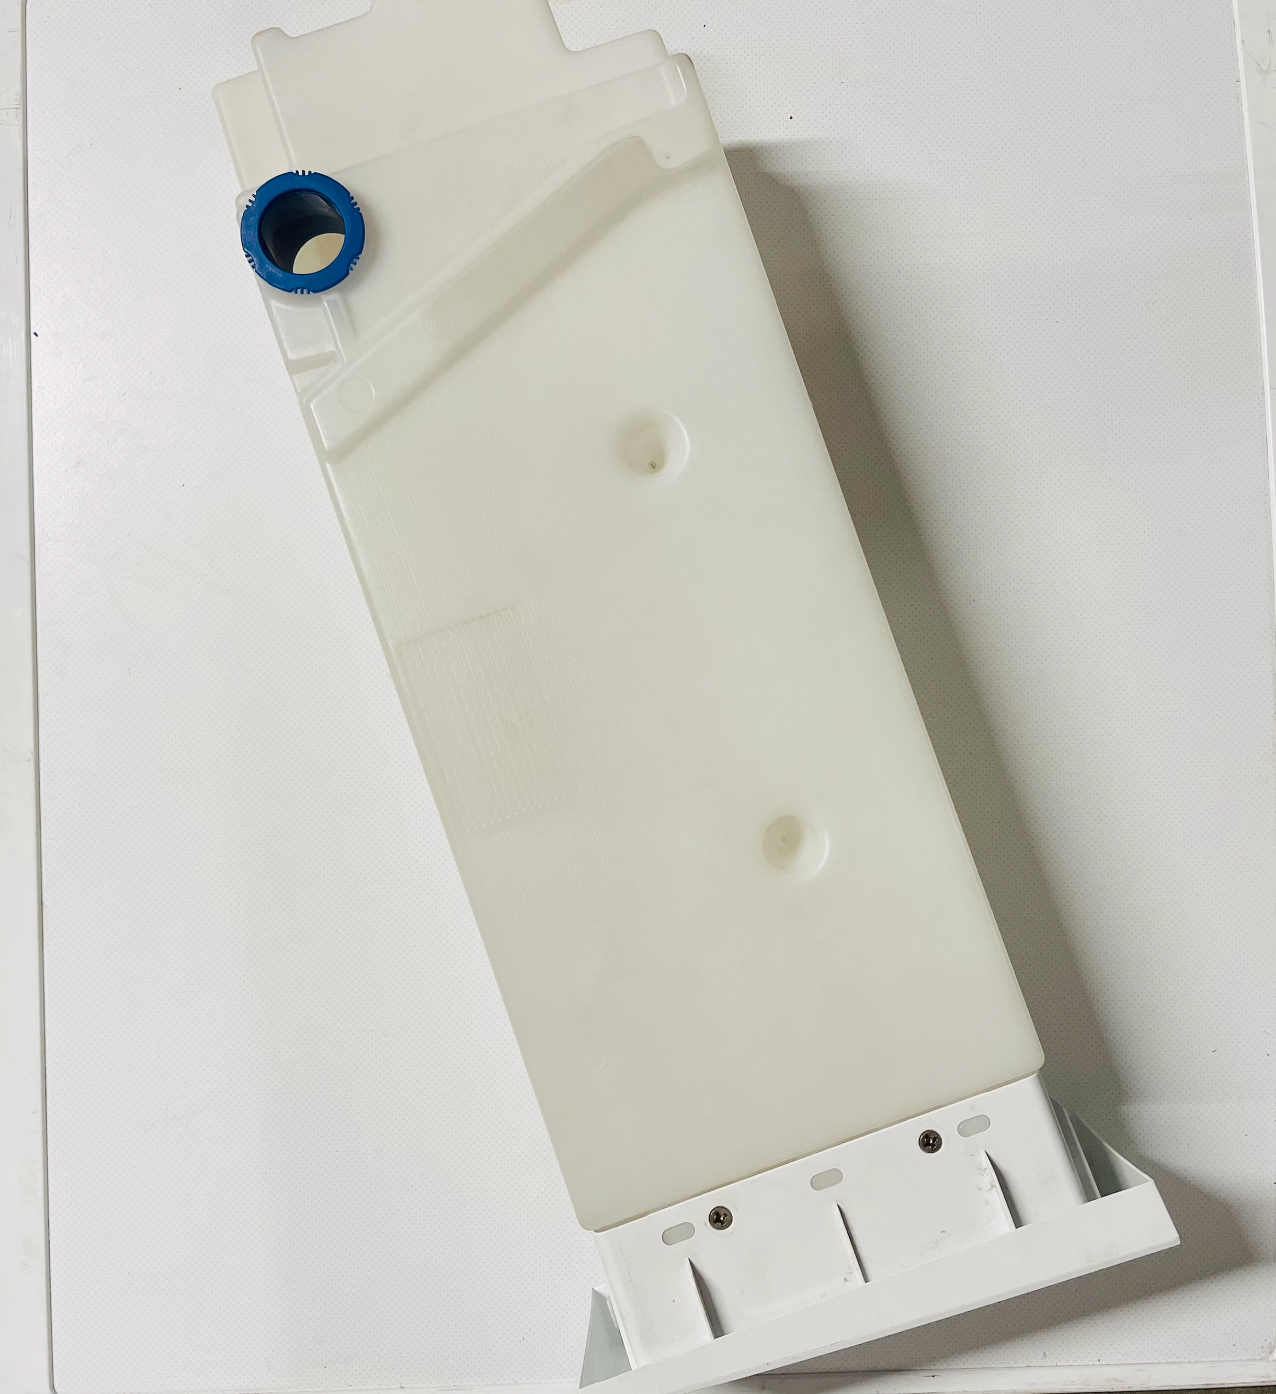 Vanntank/kondensbeholder sett til Electrolux Reverseaction Tørketrommel